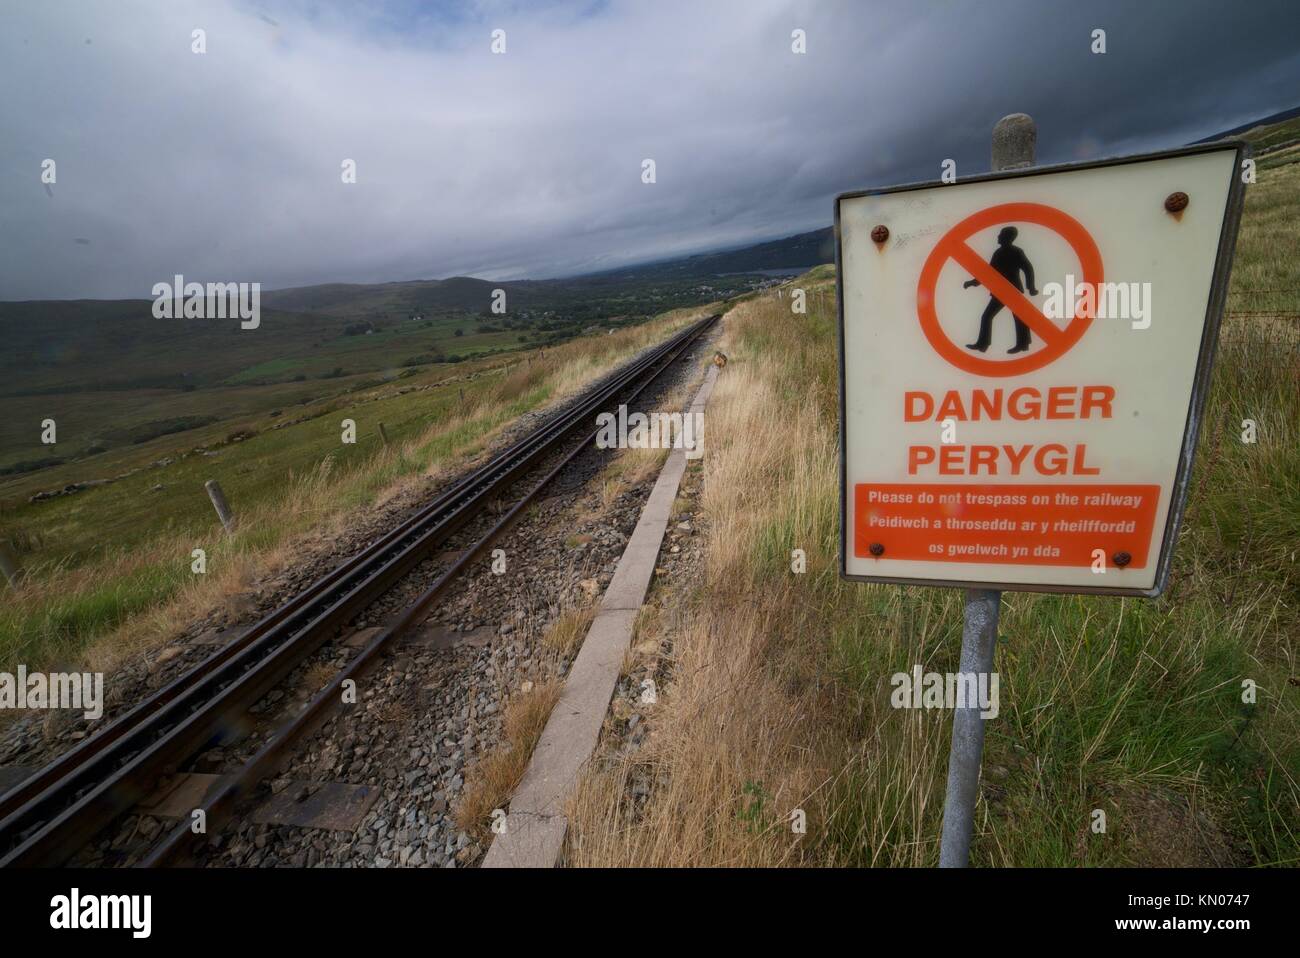 Binario ferroviario lungo Snowdon Mountain nel Parco Nazionale di Snowdonia, Galles. Segnaletica di pericolo lungo la ferrovia. via. Pericolo peryol. Foto Stock